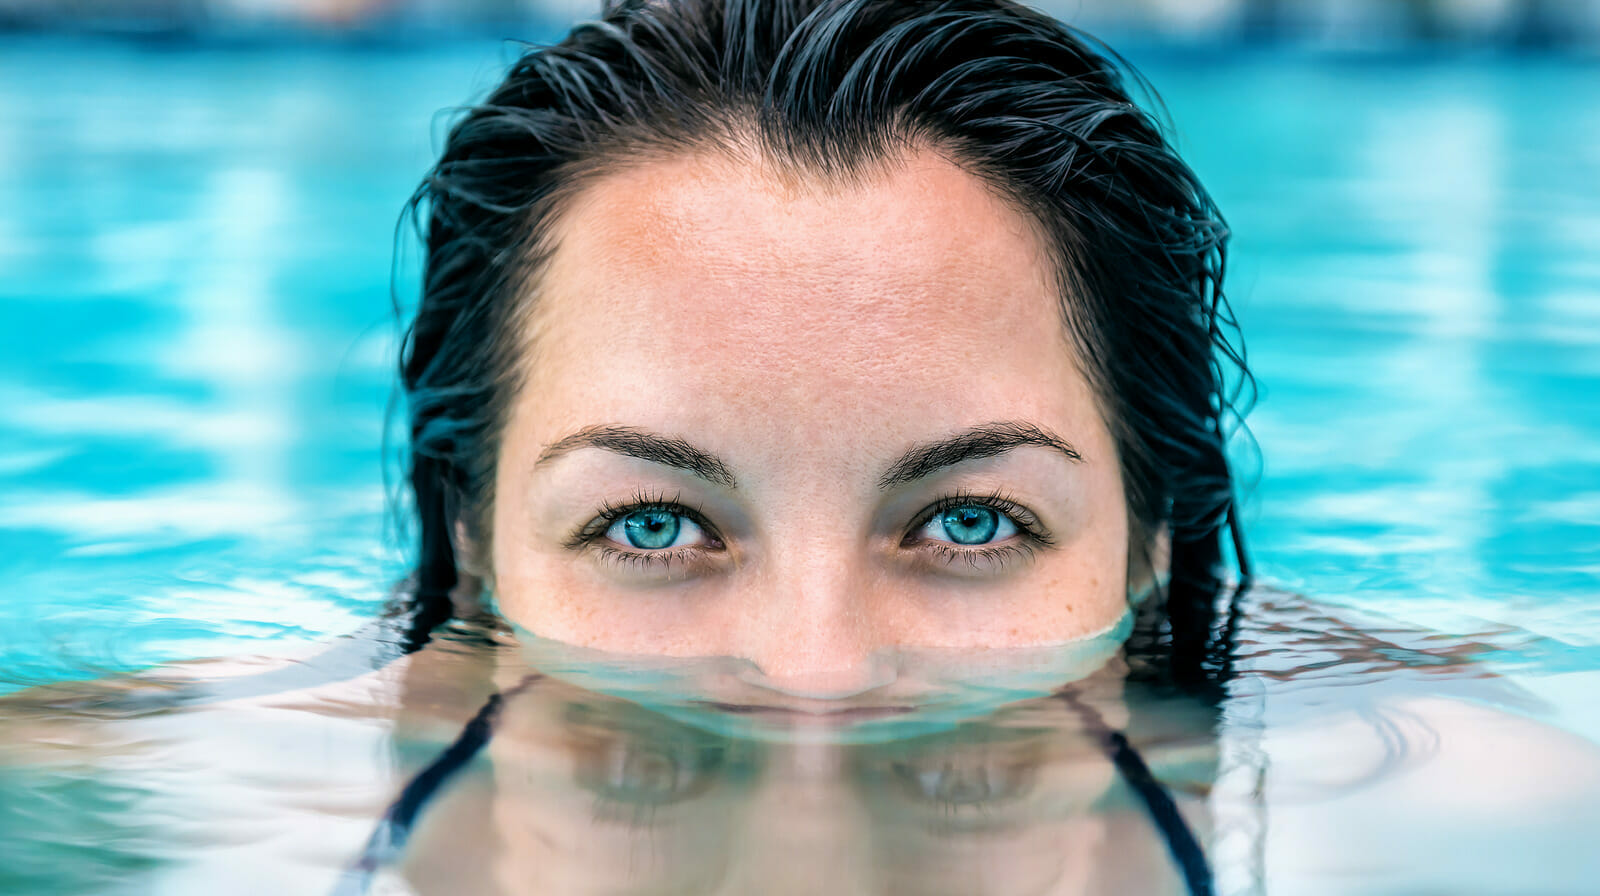 كيف تحمي عينيك أثناء السباحة؟ watanserb.com